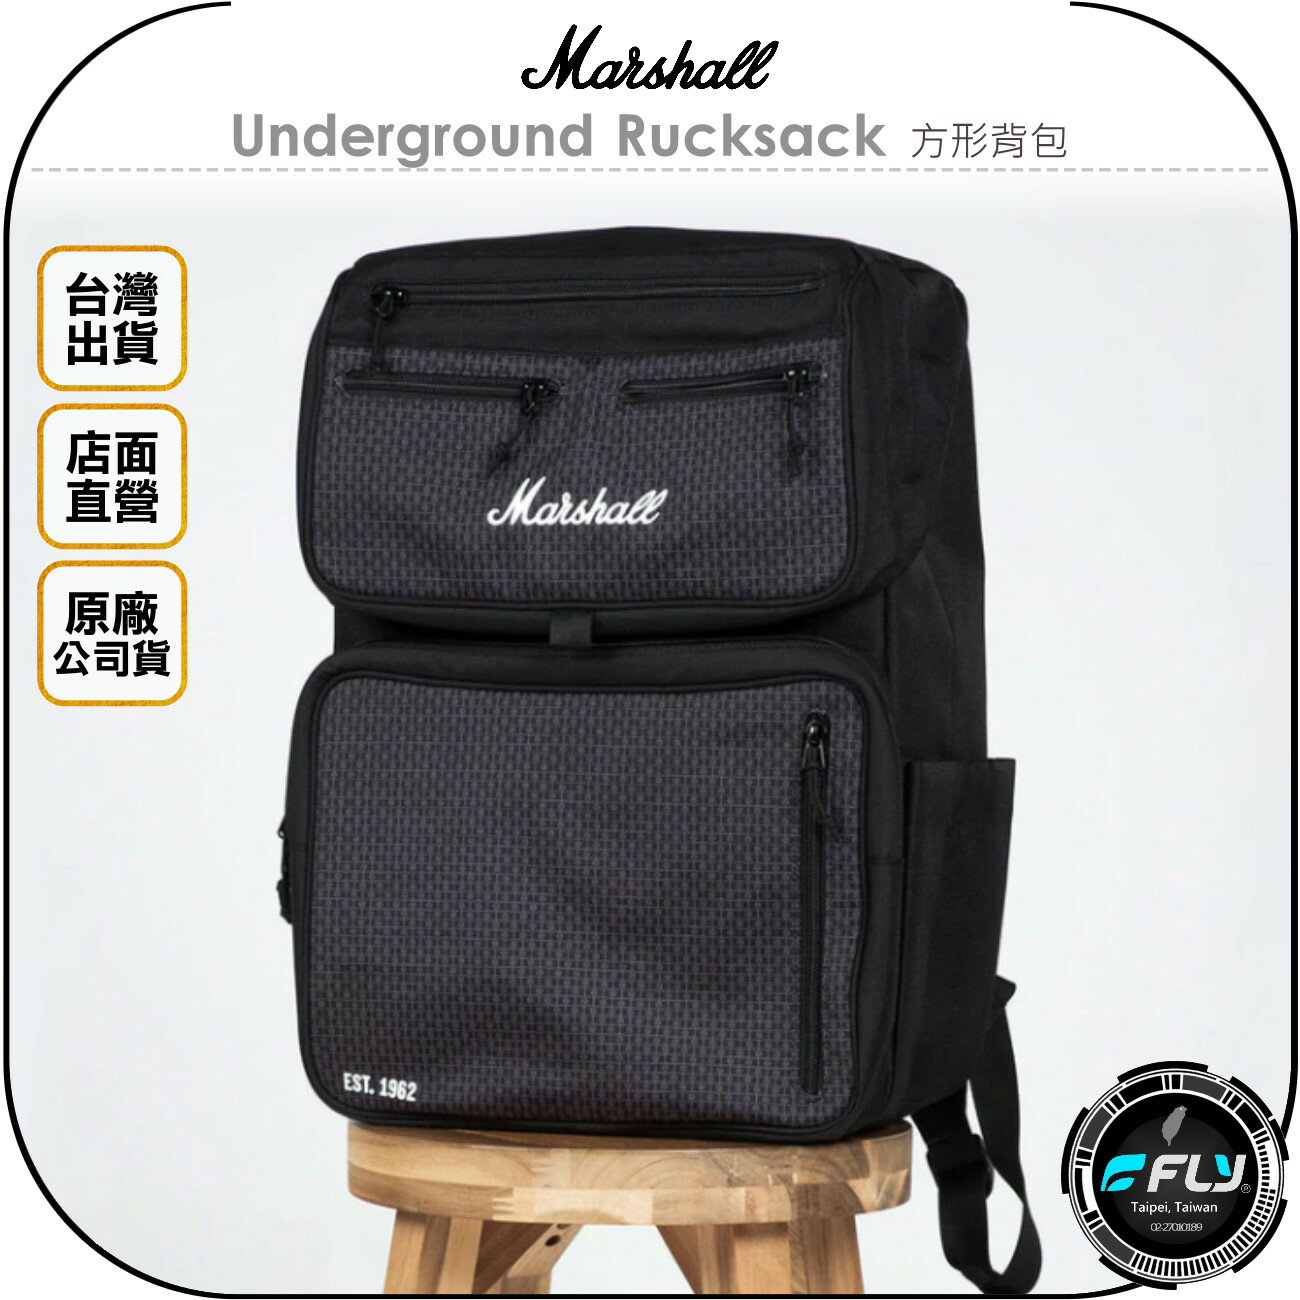 《飛翔無線3C》Marshall Underground Rucksack 方形背包◉公司貨◉雙肩後背包◉都會生活包